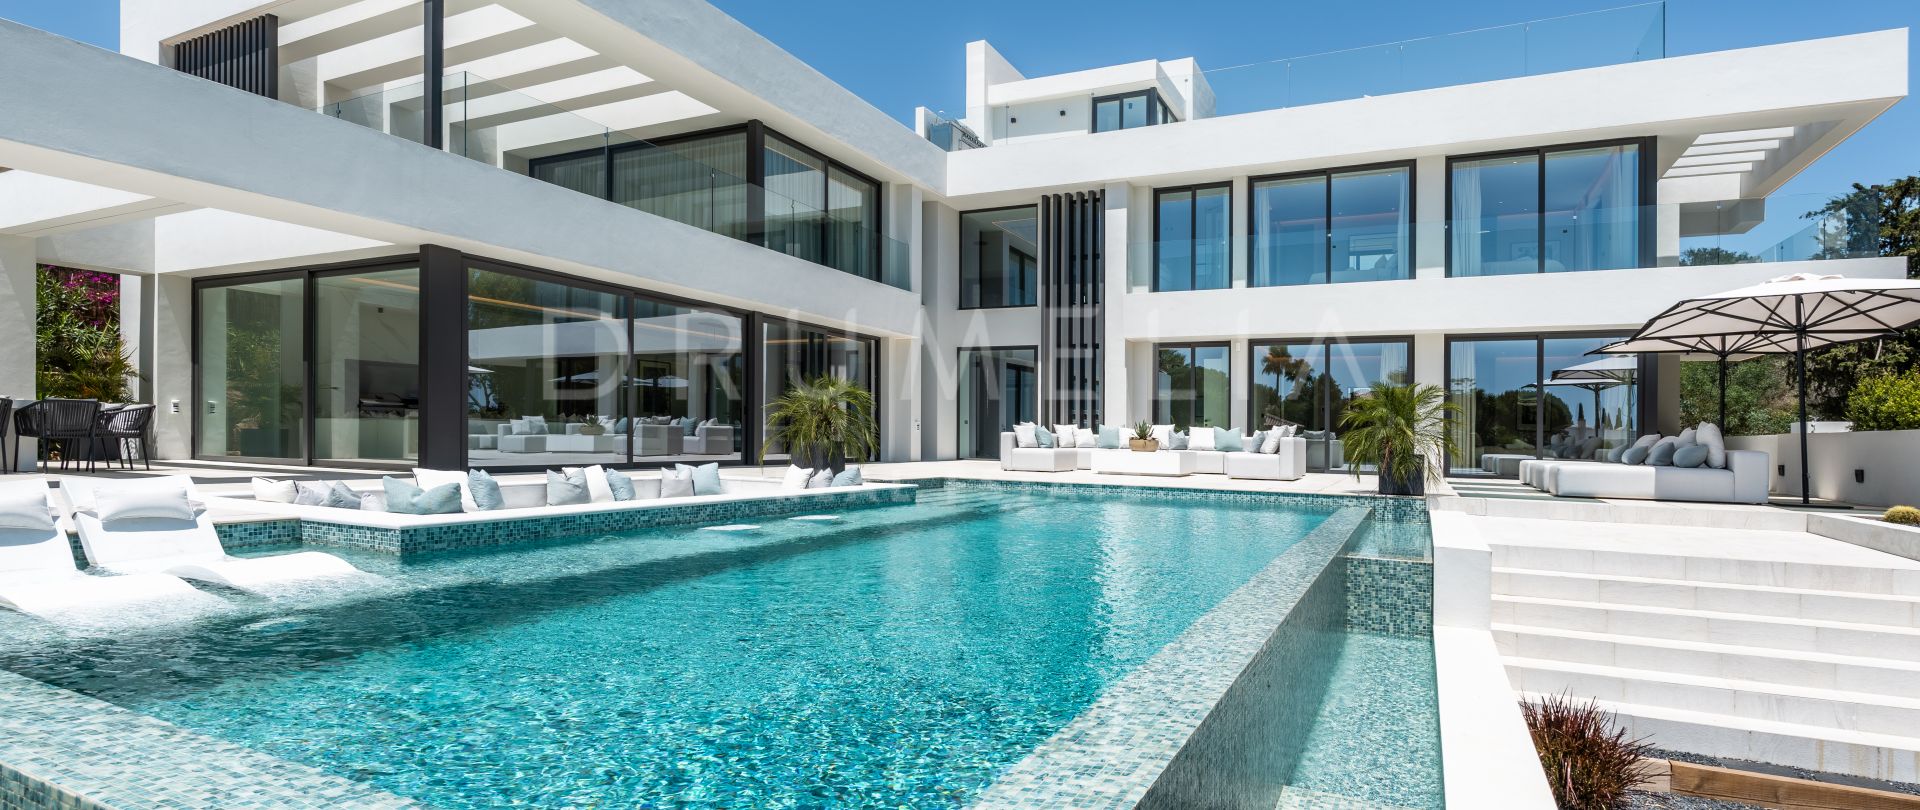 Luxurious Modern Mansion - No Large Plot